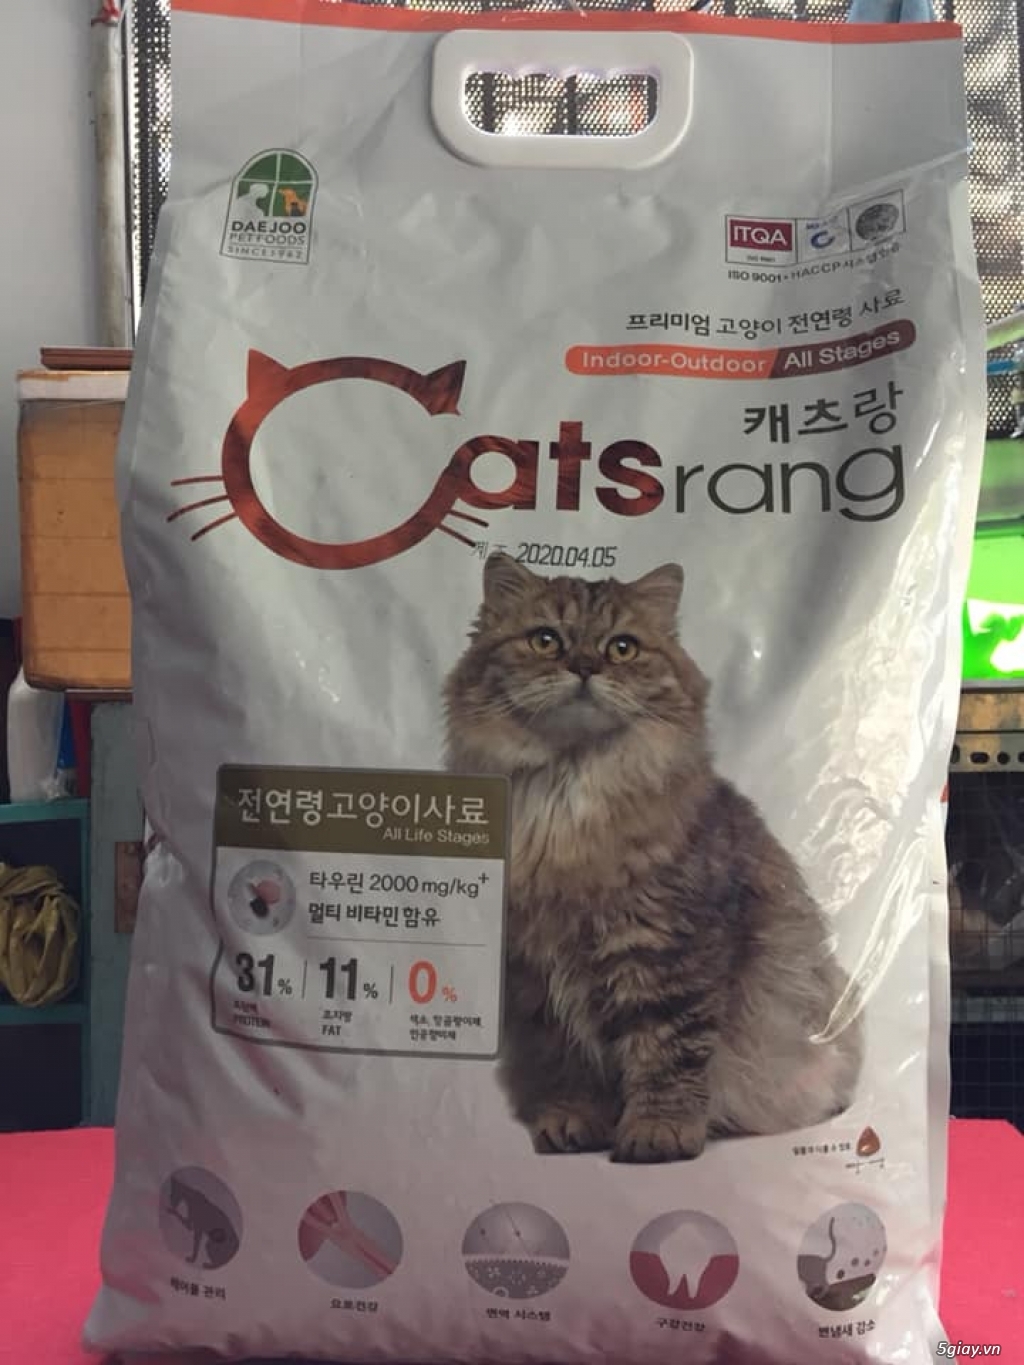 Thức Ăn Cho Mèo Royal, Cat's Eye, Catsrang, Minino - Cát Vệ Sinh Mèo - 2